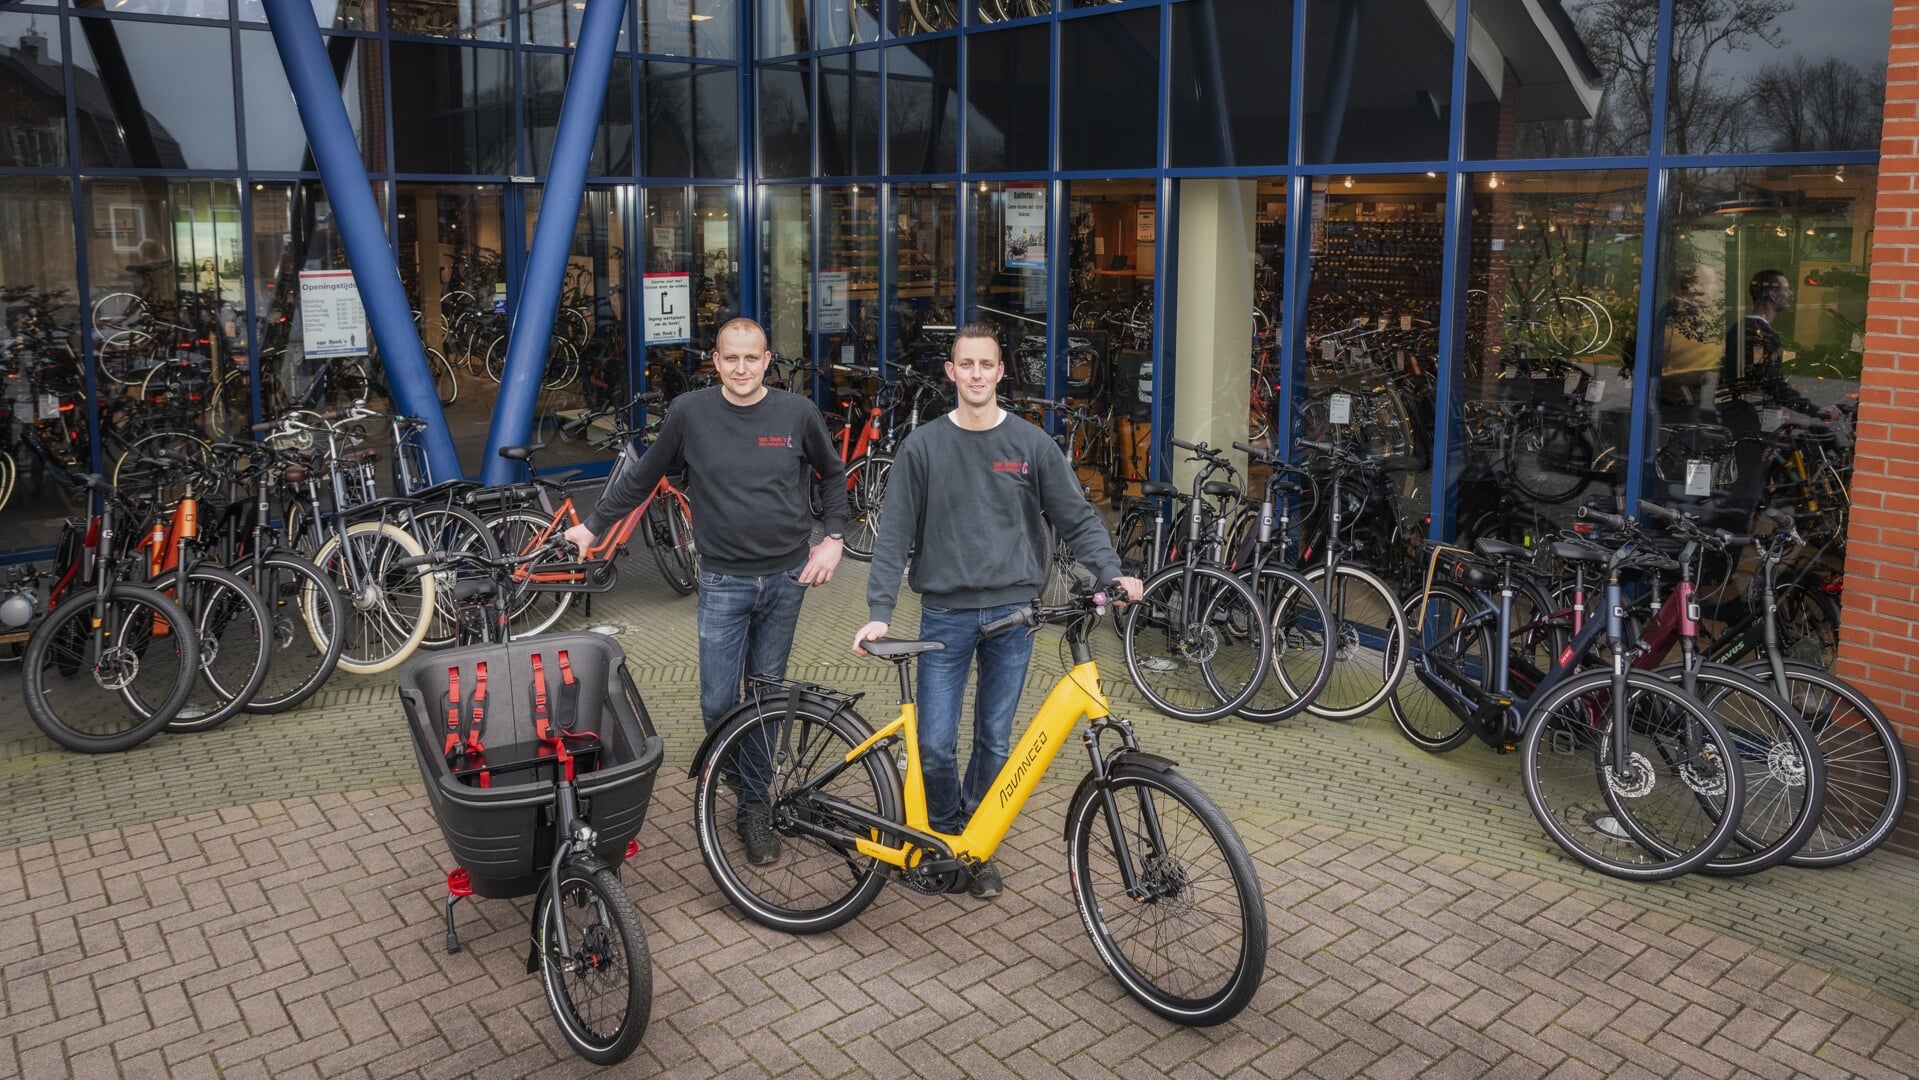 Aanzienlijk Koe restaurant Ebike-specialist geeft tips: 'Voor iedereen een passende elektrische fiets'  - Barneveldse Krant | Nieuws uit de regio Barneveld